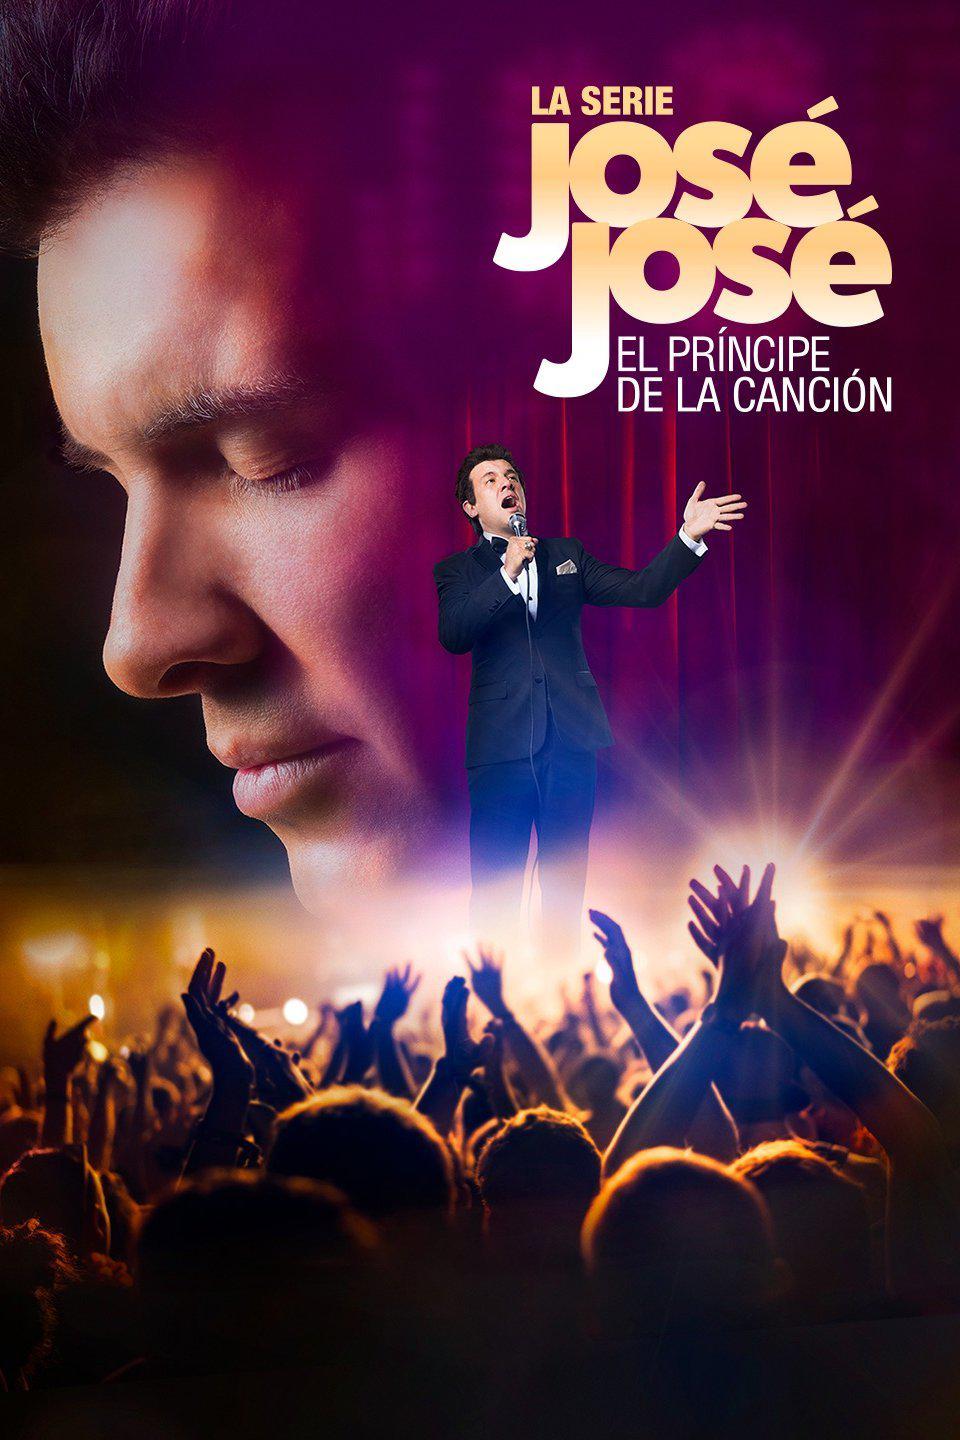 TV ratings for José José, El Príncipe De La Canción in Colombia. Telemundo TV series